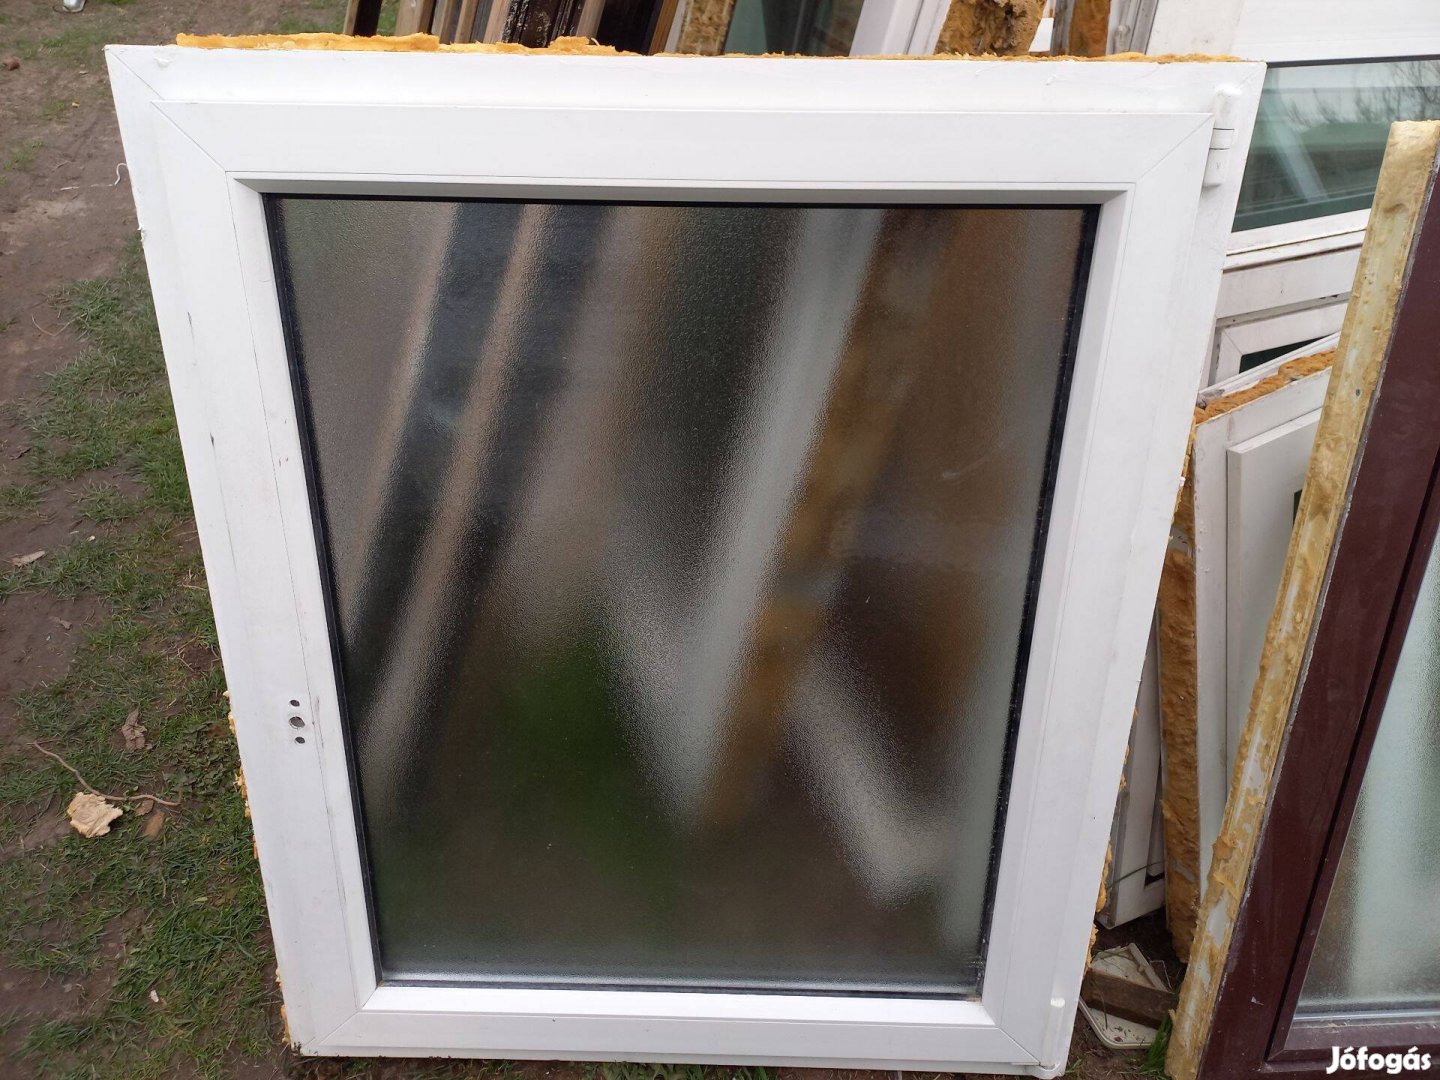 Műanyag ablak 50 cm x 108 cm ; 90 cm x 108 cm